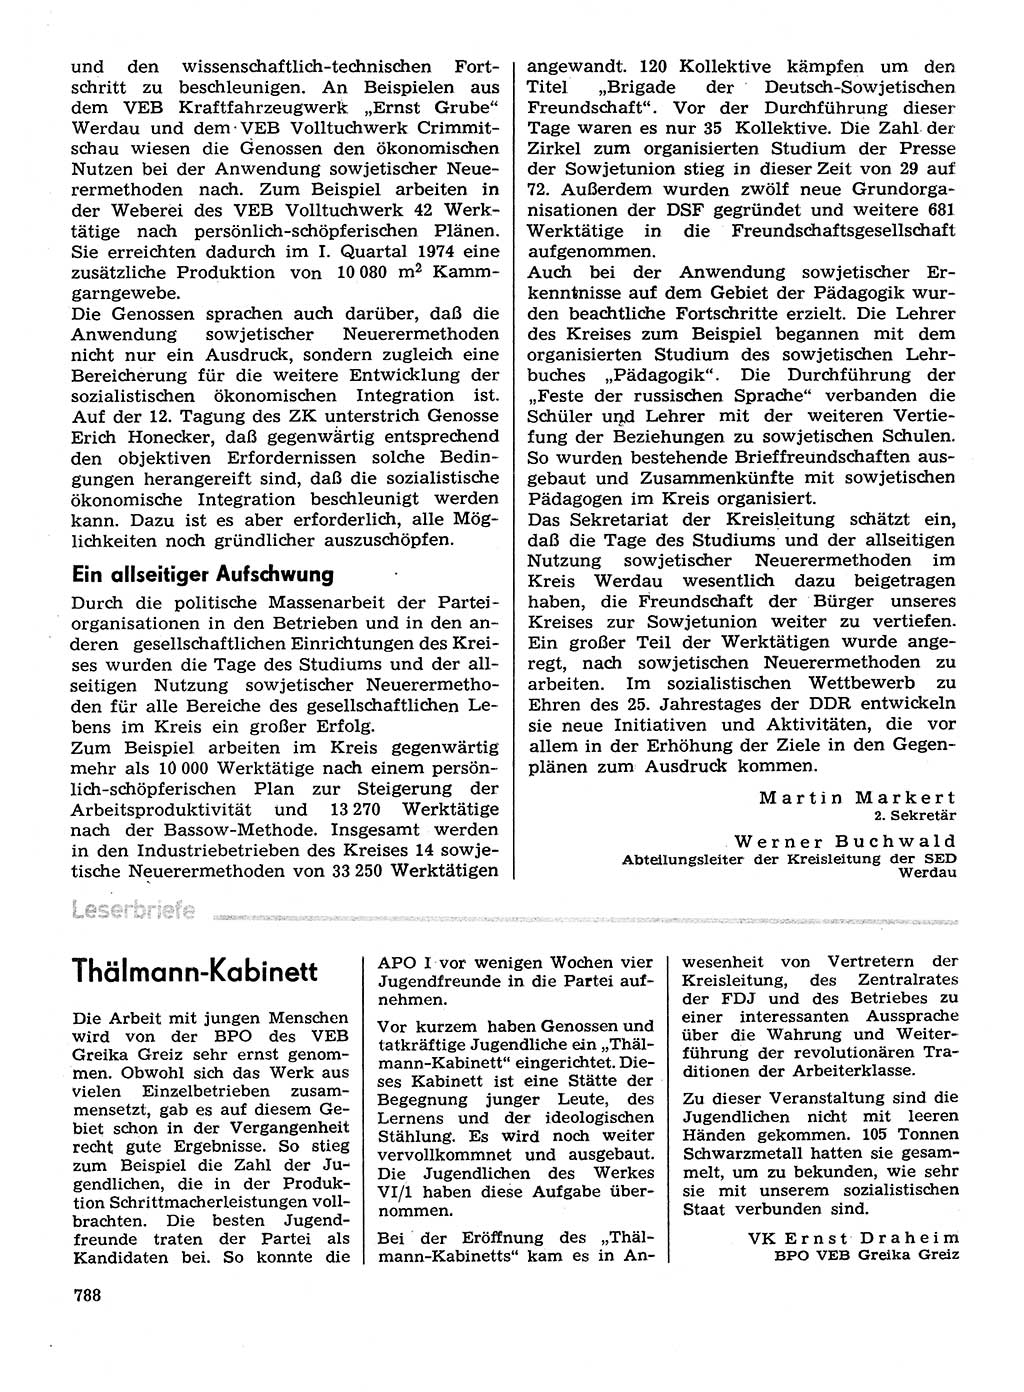 Neuer Weg (NW), Organ des Zentralkomitees (ZK) der SED (Sozialistische Einheitspartei Deutschlands) für Fragen des Parteilebens, 29. Jahrgang [Deutsche Demokratische Republik (DDR)] 1974, Seite 788 (NW ZK SED DDR 1974, S. 788)